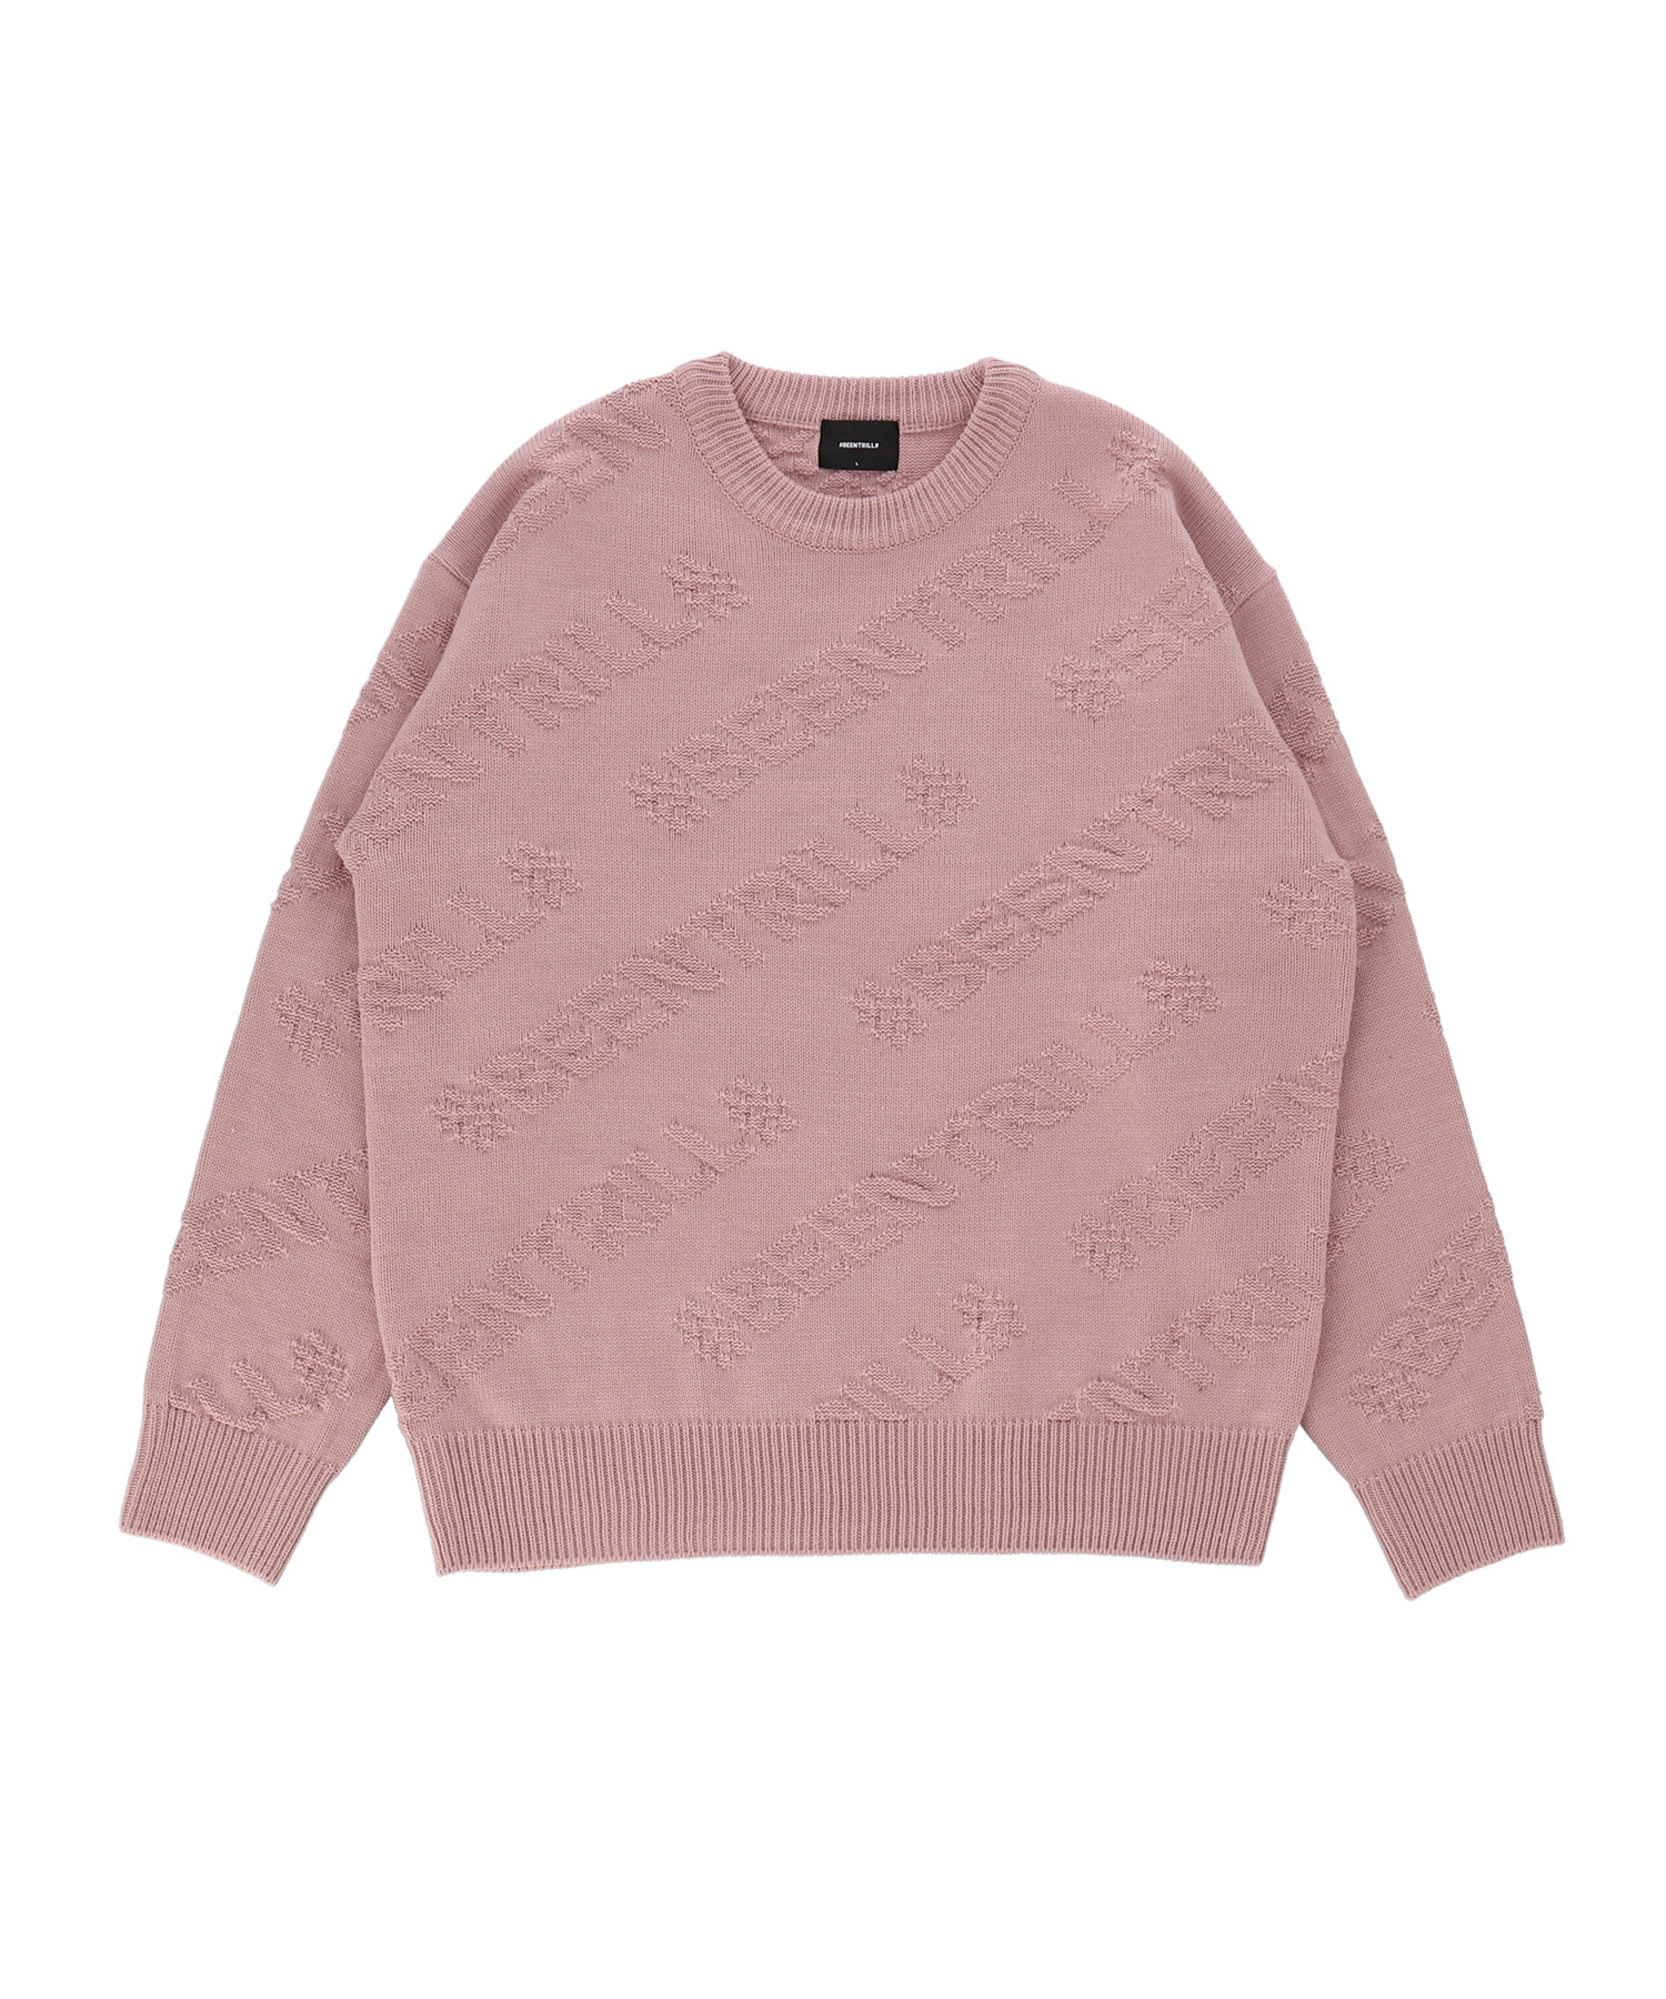 플라이트 모노그램 오버핏 스웨터(핑크)